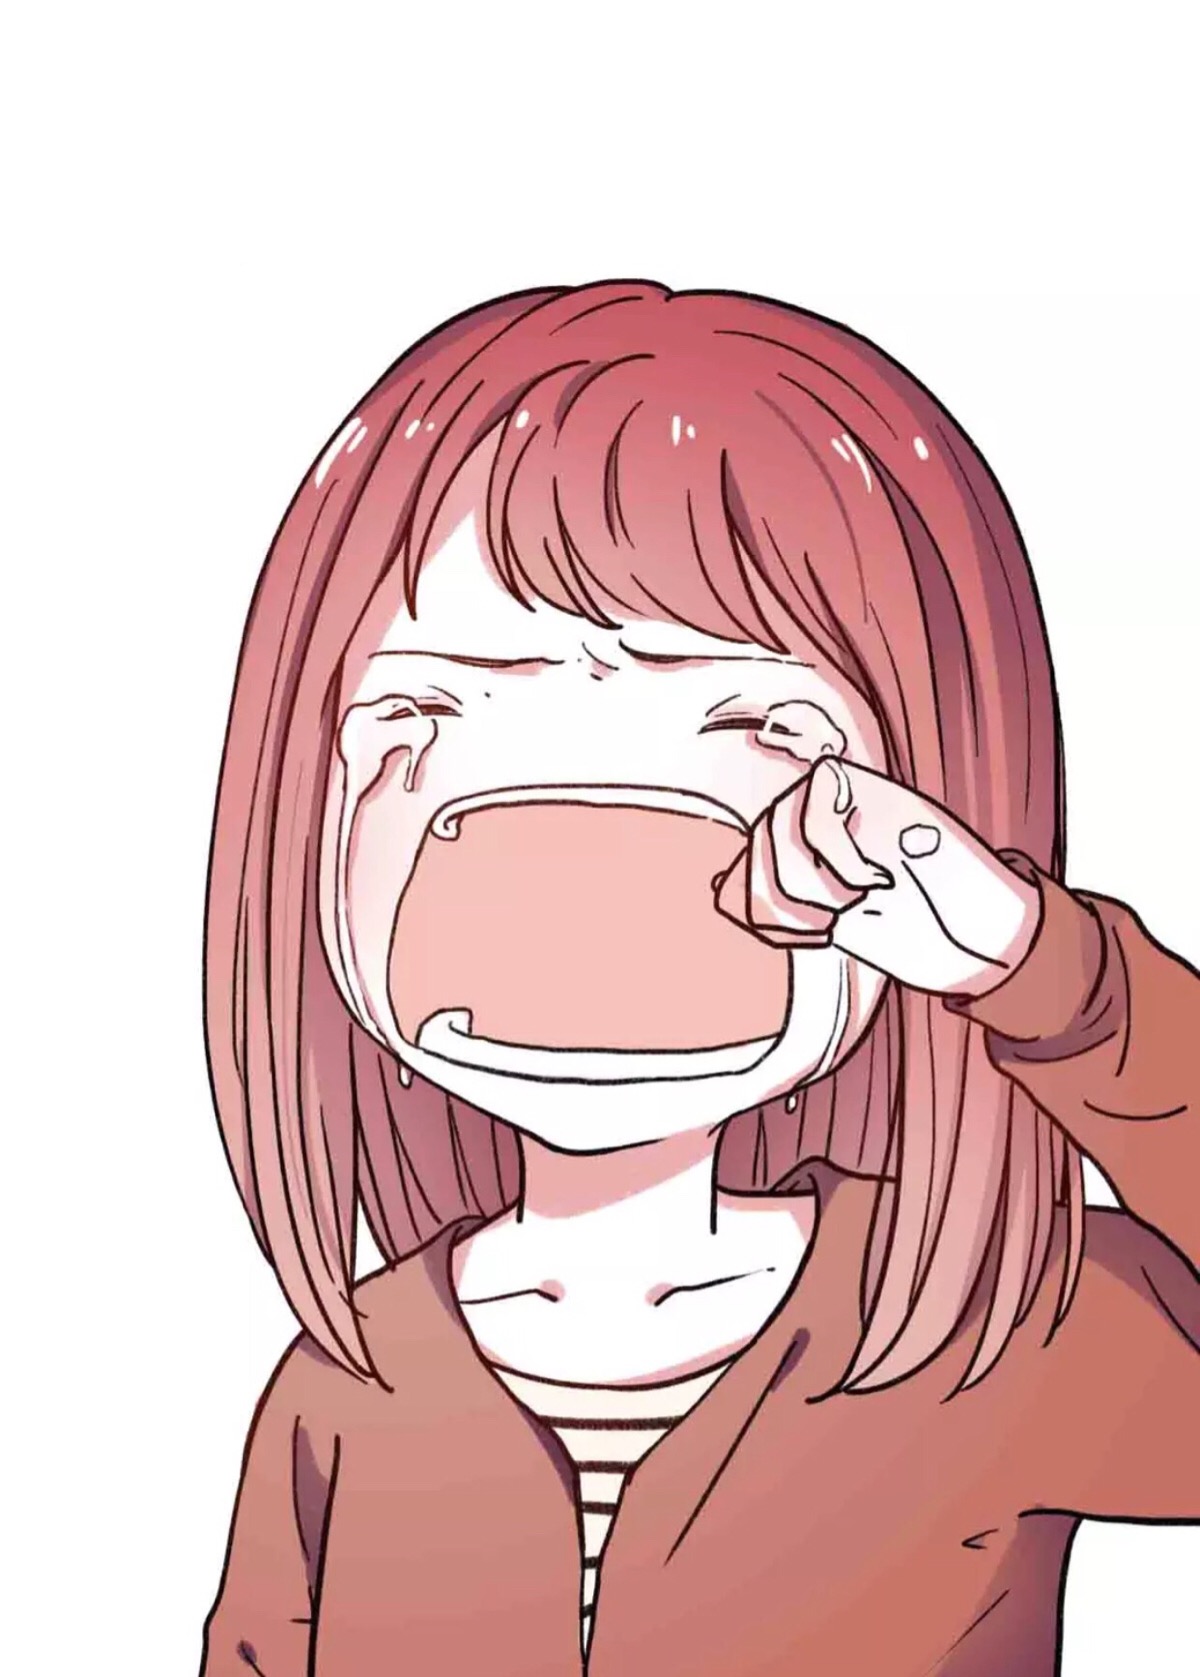 《零度恋人》 短发娘 立夏 申田一 漫画 二次元 眼泪 动漫 伤感 卡通